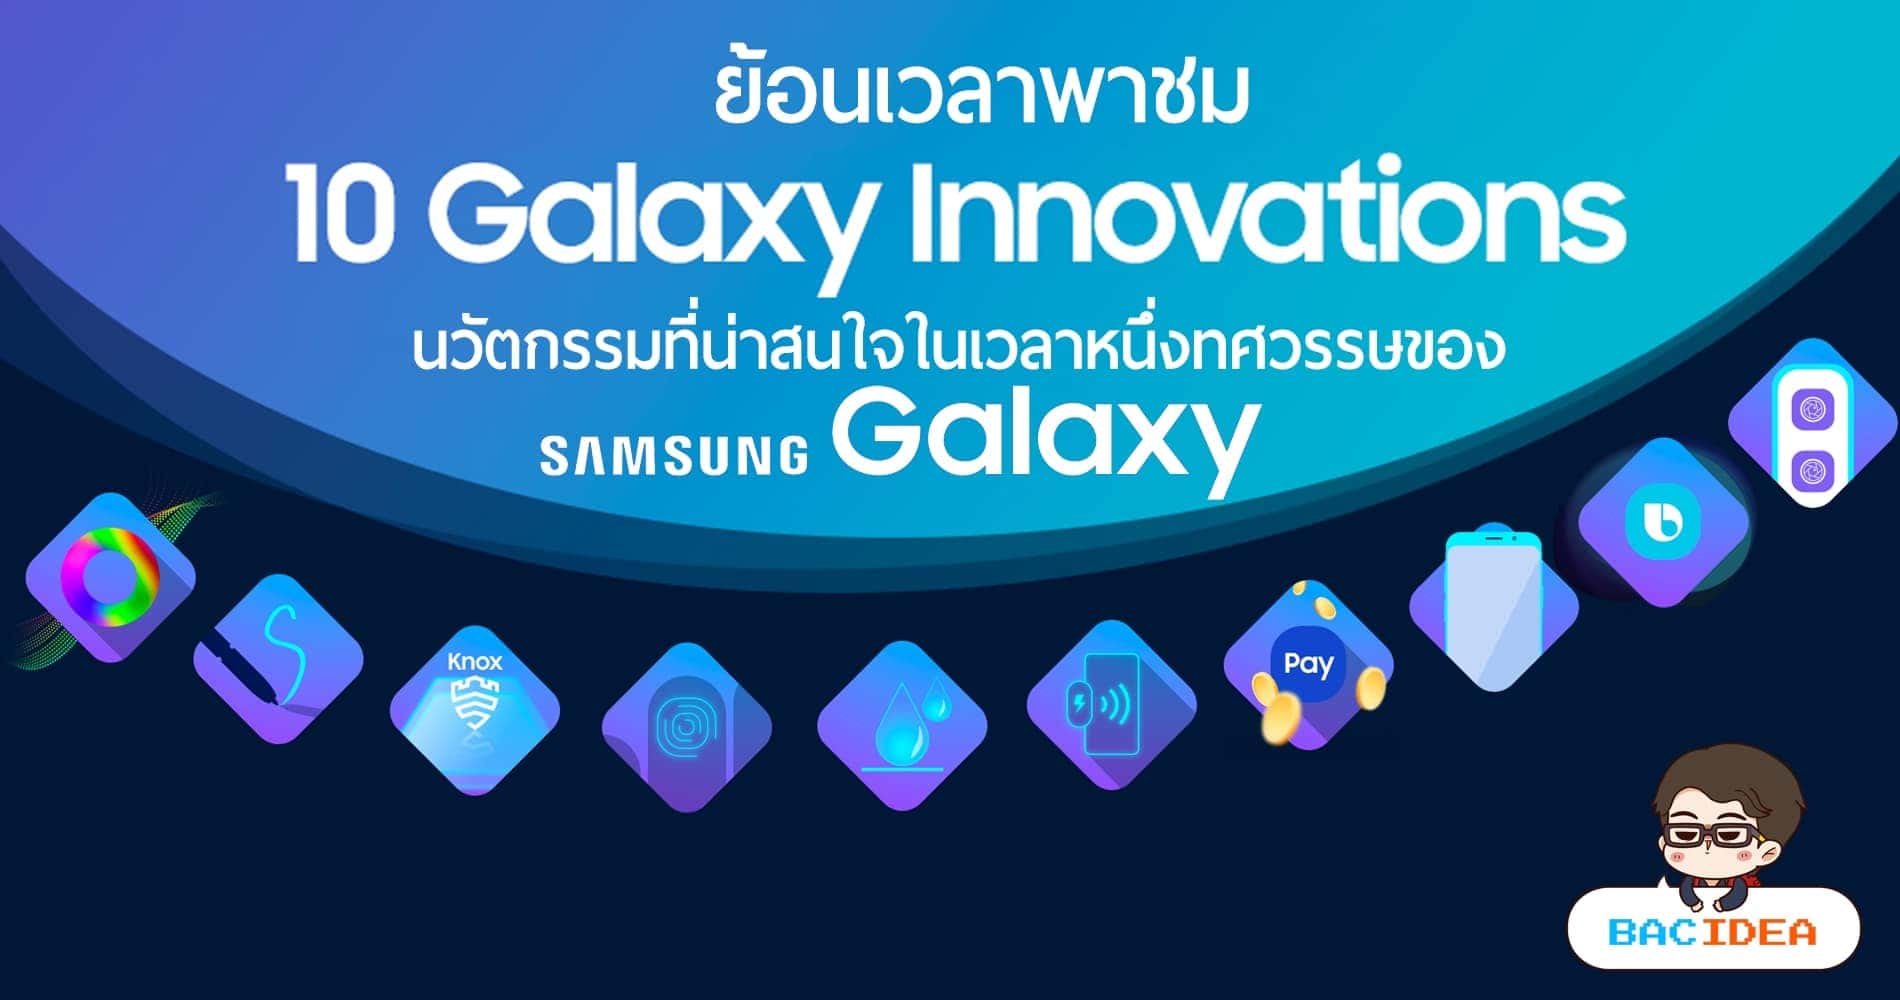 ย้อนเวลาพาชม 10 นวัตกรรมที่น่าสนใจในเวลาหนึ่งทศวรรษของ Samsung Galaxy 1